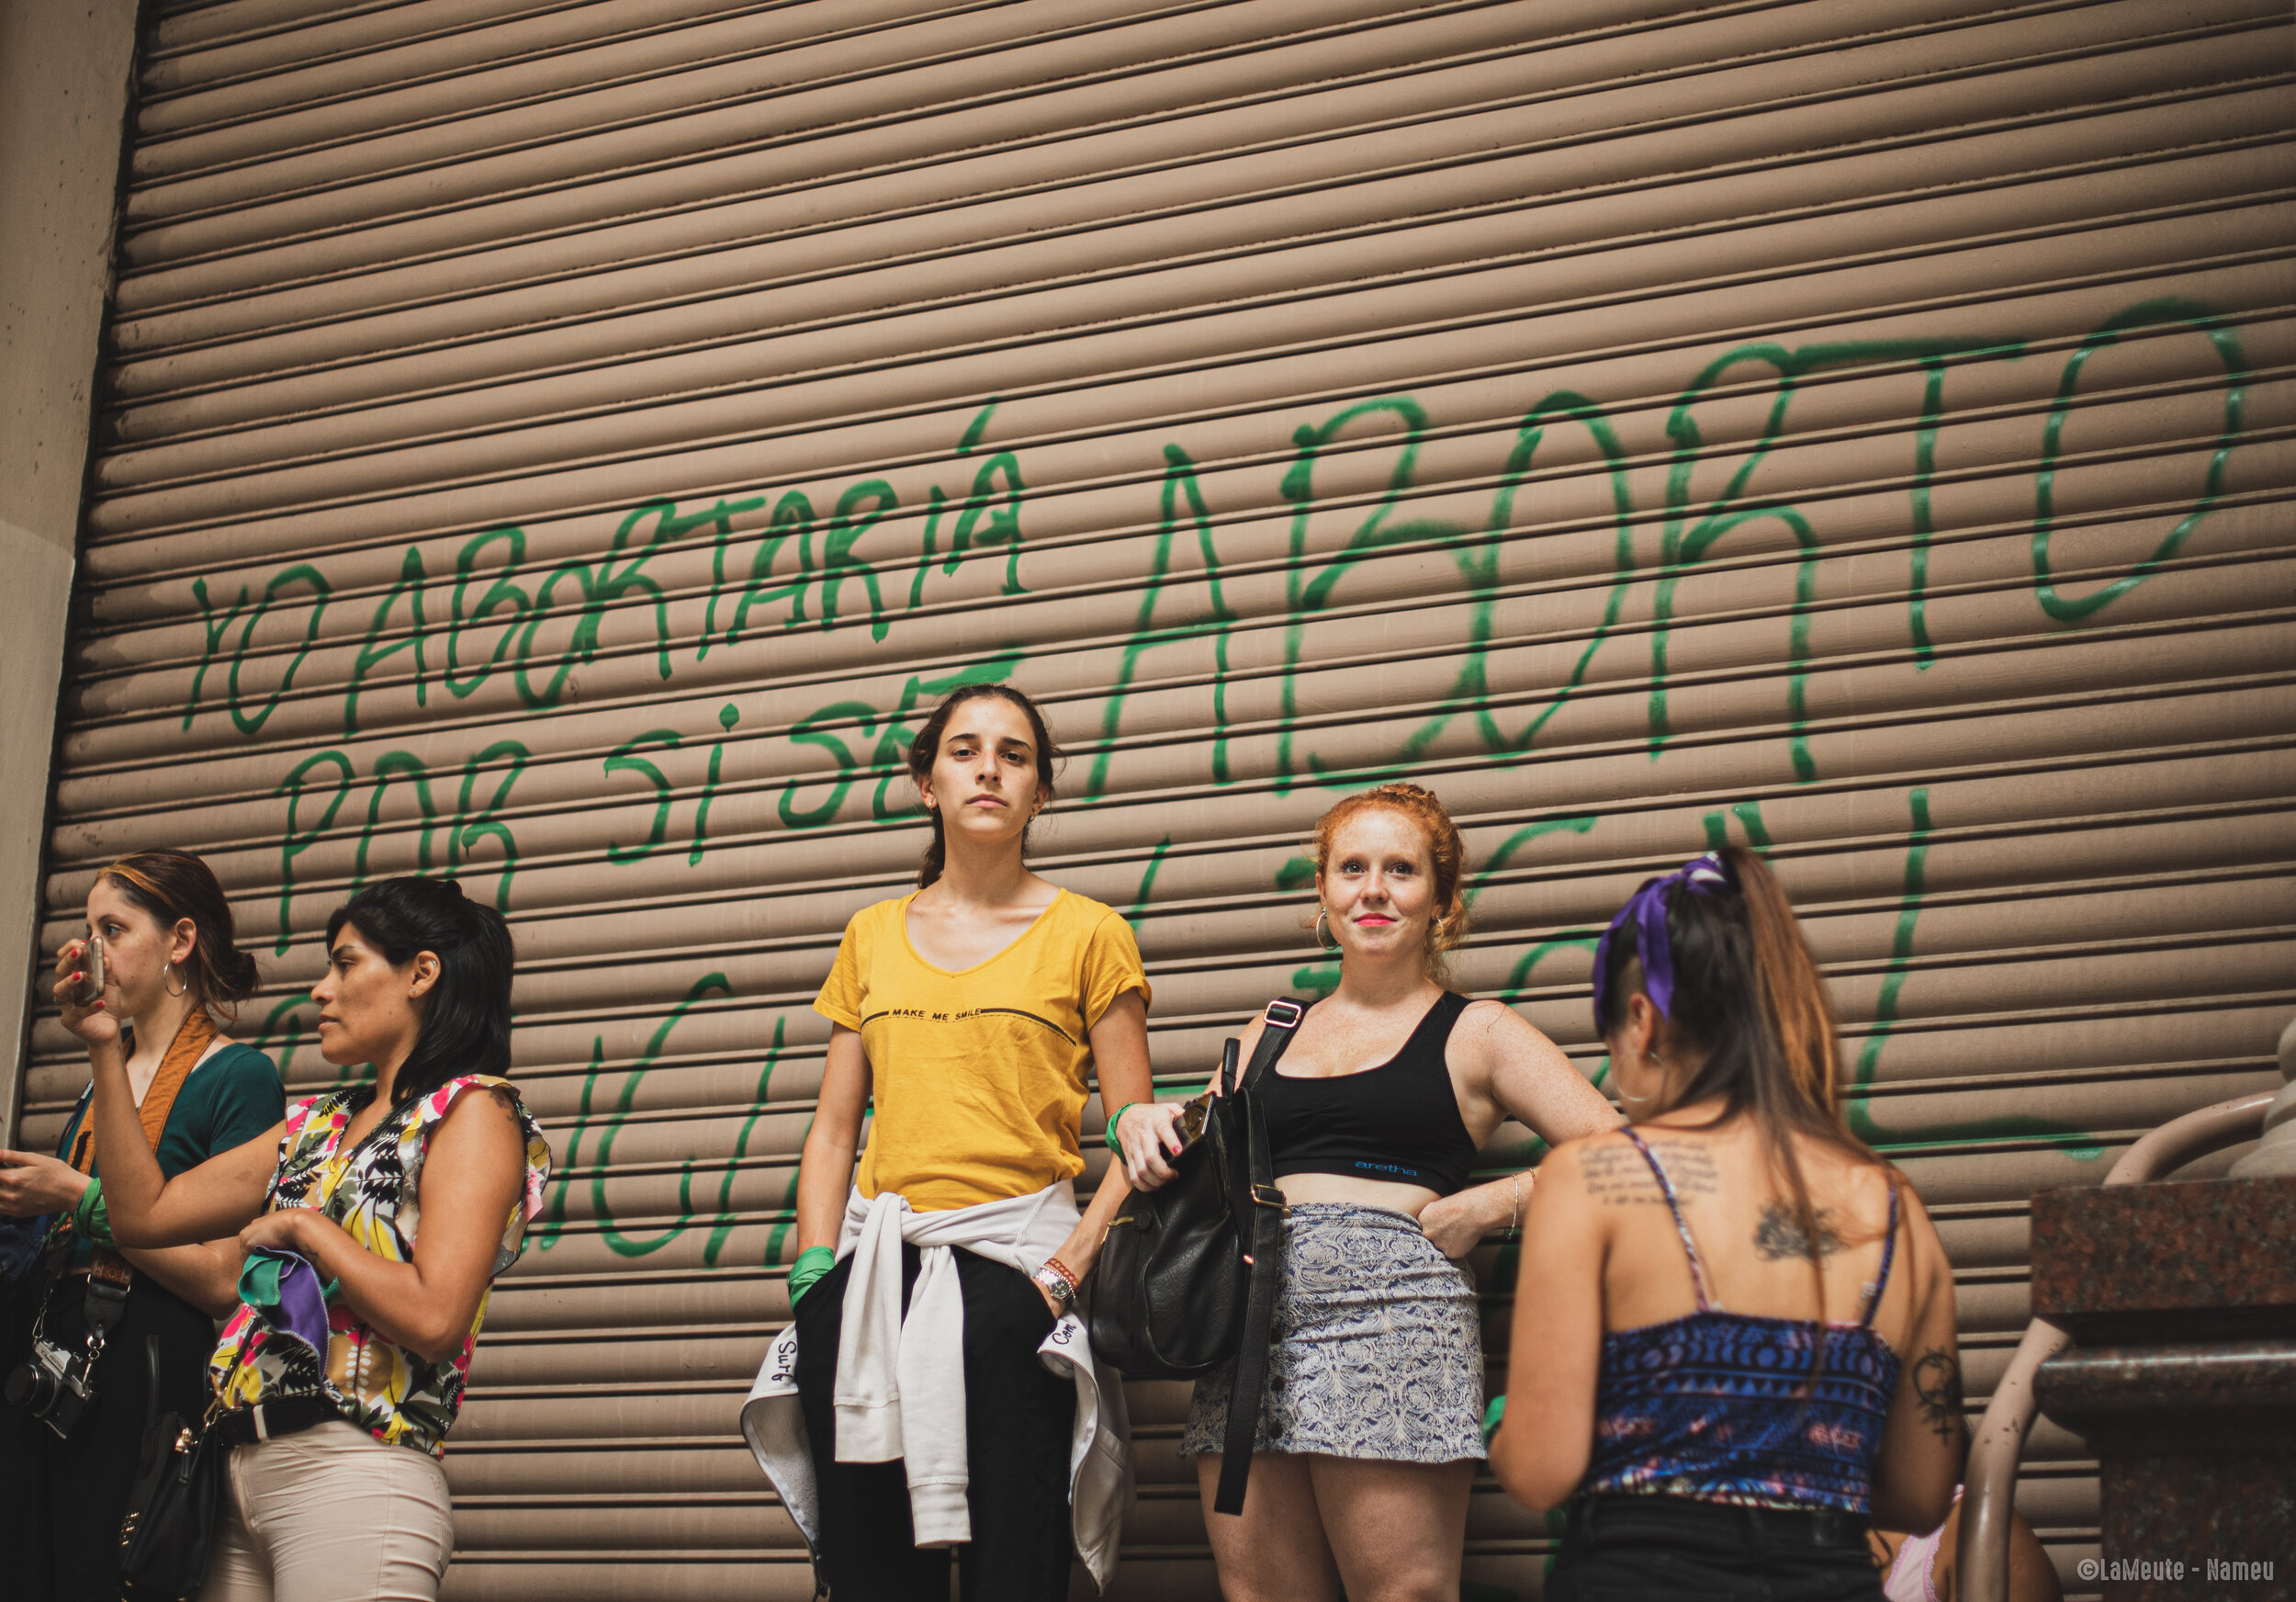   Des manifestantes regardent le cortège avancer, derrière elles un graffiti dit : « Je préférerai avorter que de prendre le risque qu'il devienne policier ». L'avortement est illégal en Argentine sauf quand la vie de la mère est en danger ou lorsque